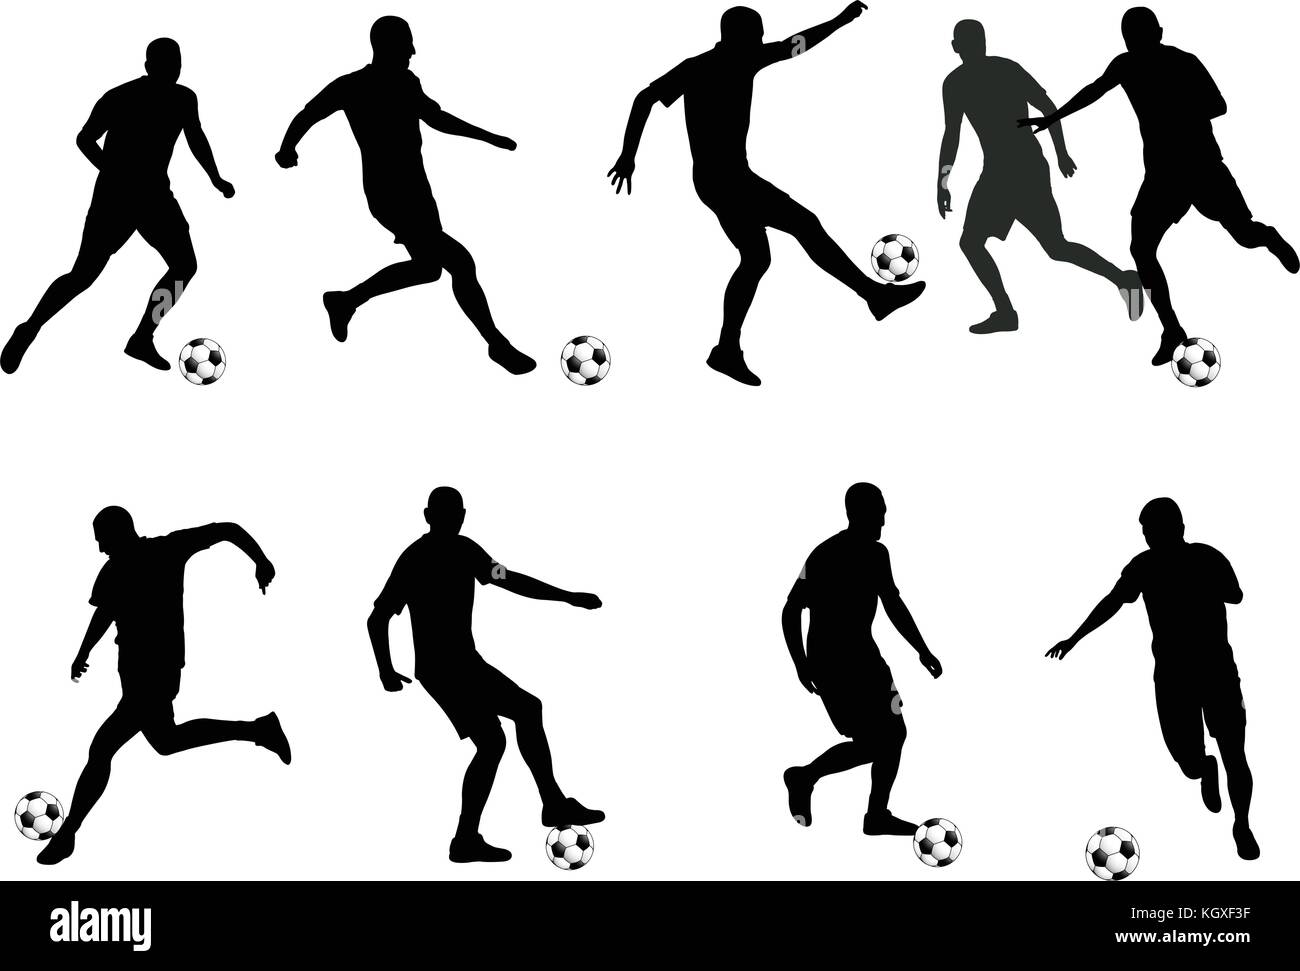 Fußball-Spieler detaillierte Silhouetten-Vektor Stock Vektor